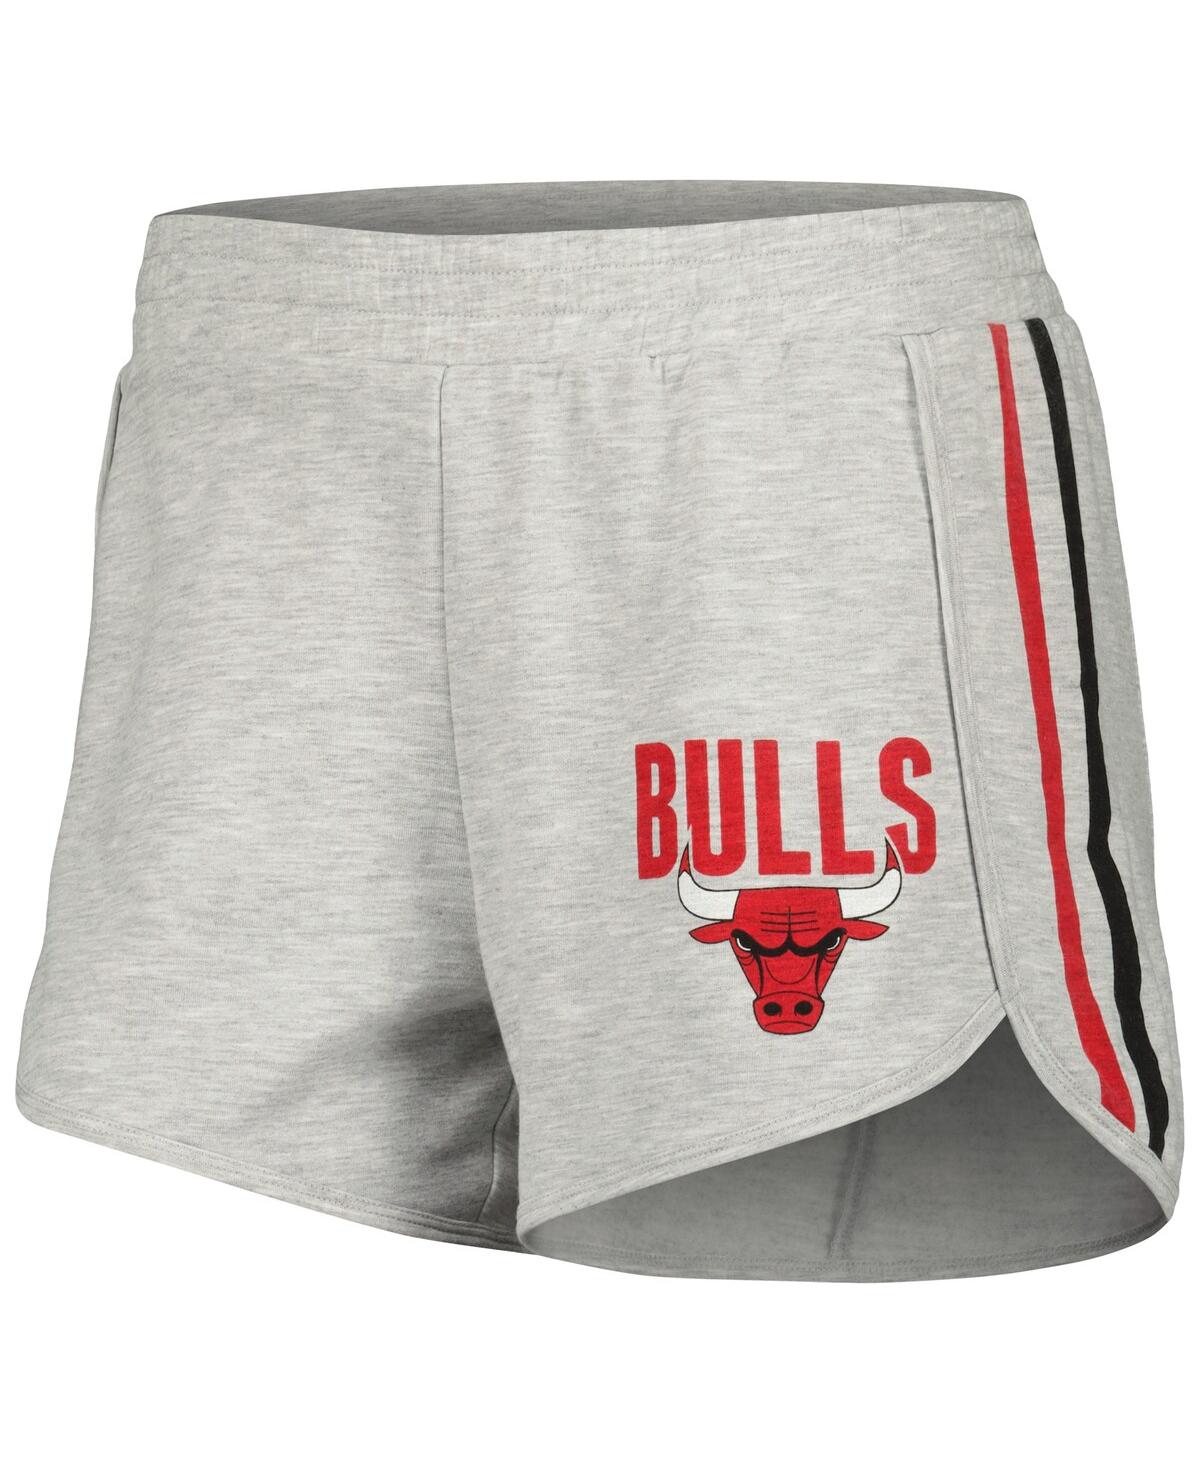 Shop Concepts Sport Women's  Gray Chicago Bulls Cedar Long Sleeve T-shirt And Shorts Sleep Set